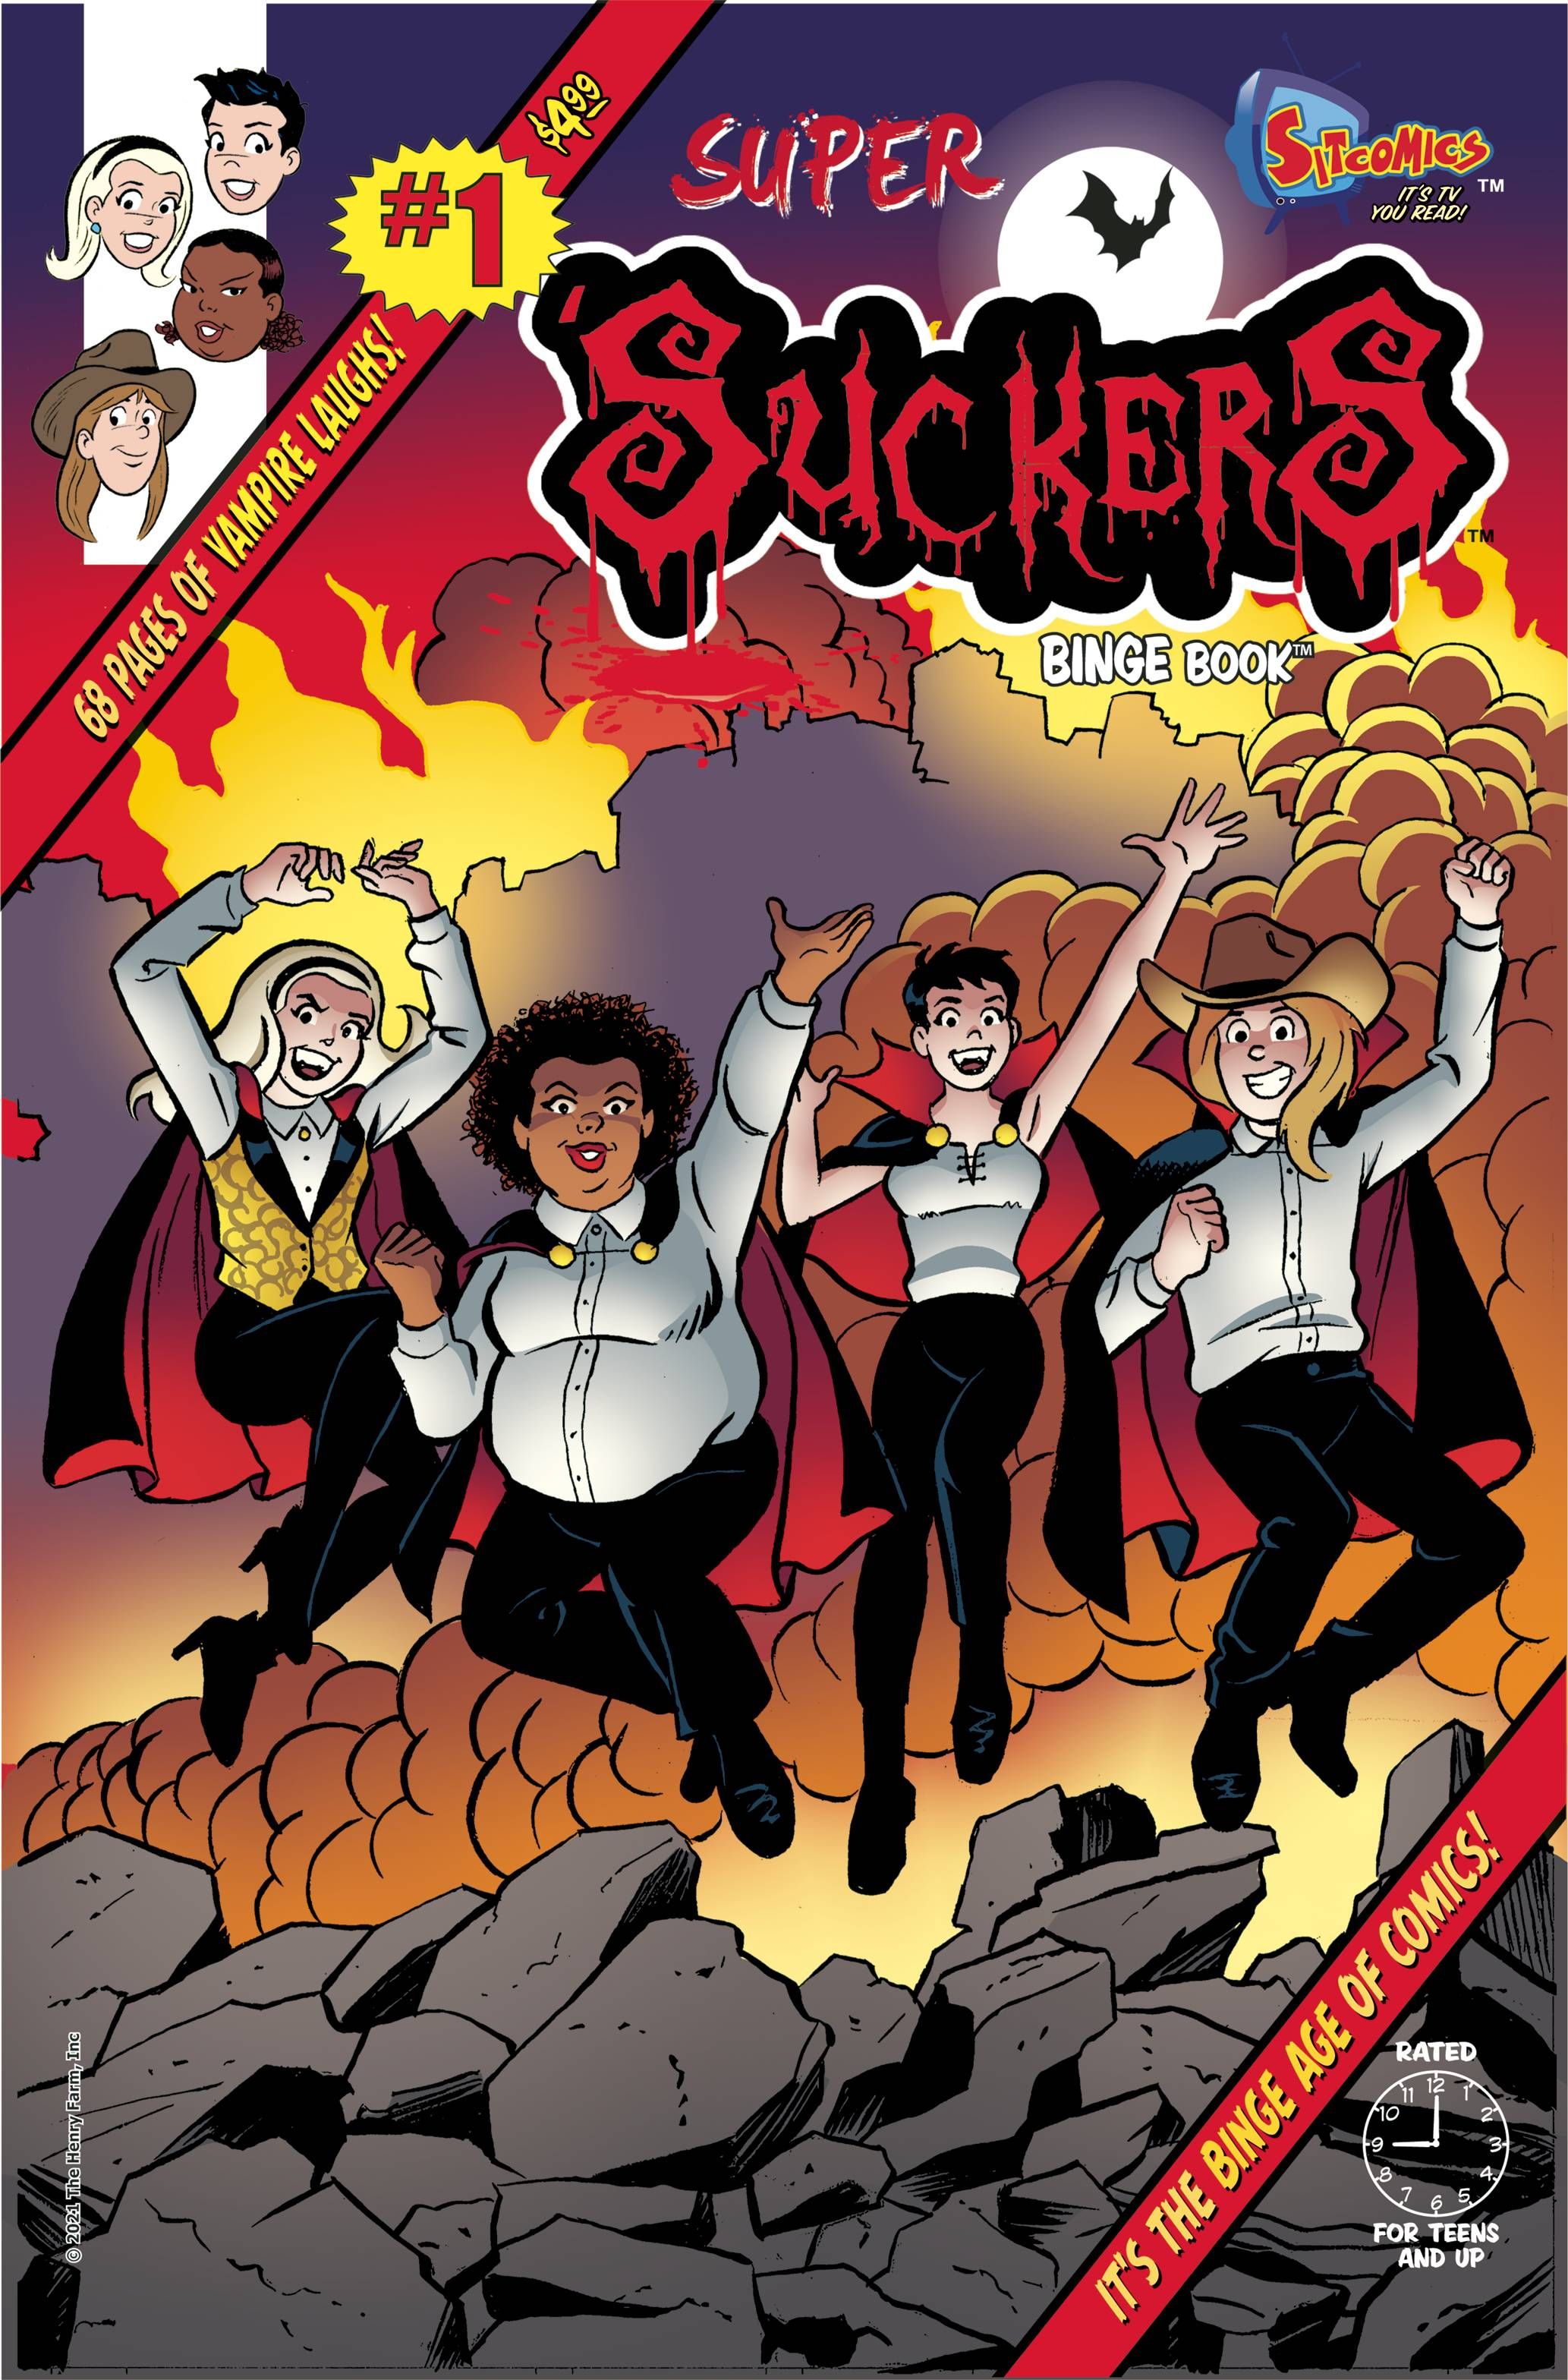 Super 'Suckers Binge Book #1 Comic